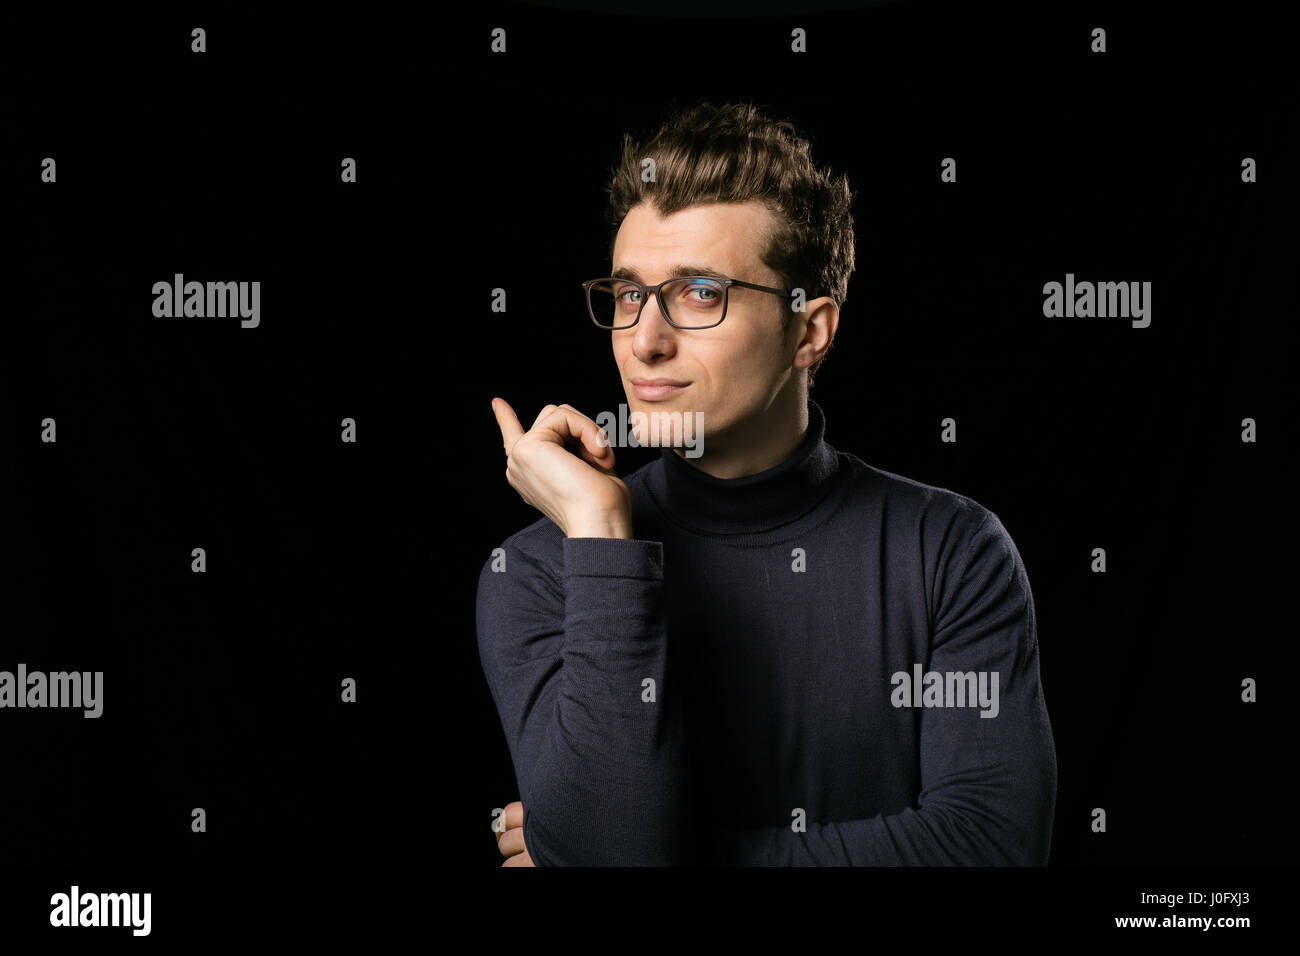 Smart uomo con eleganti occhiali e collo camicetta su sfondo nero Foto Stock